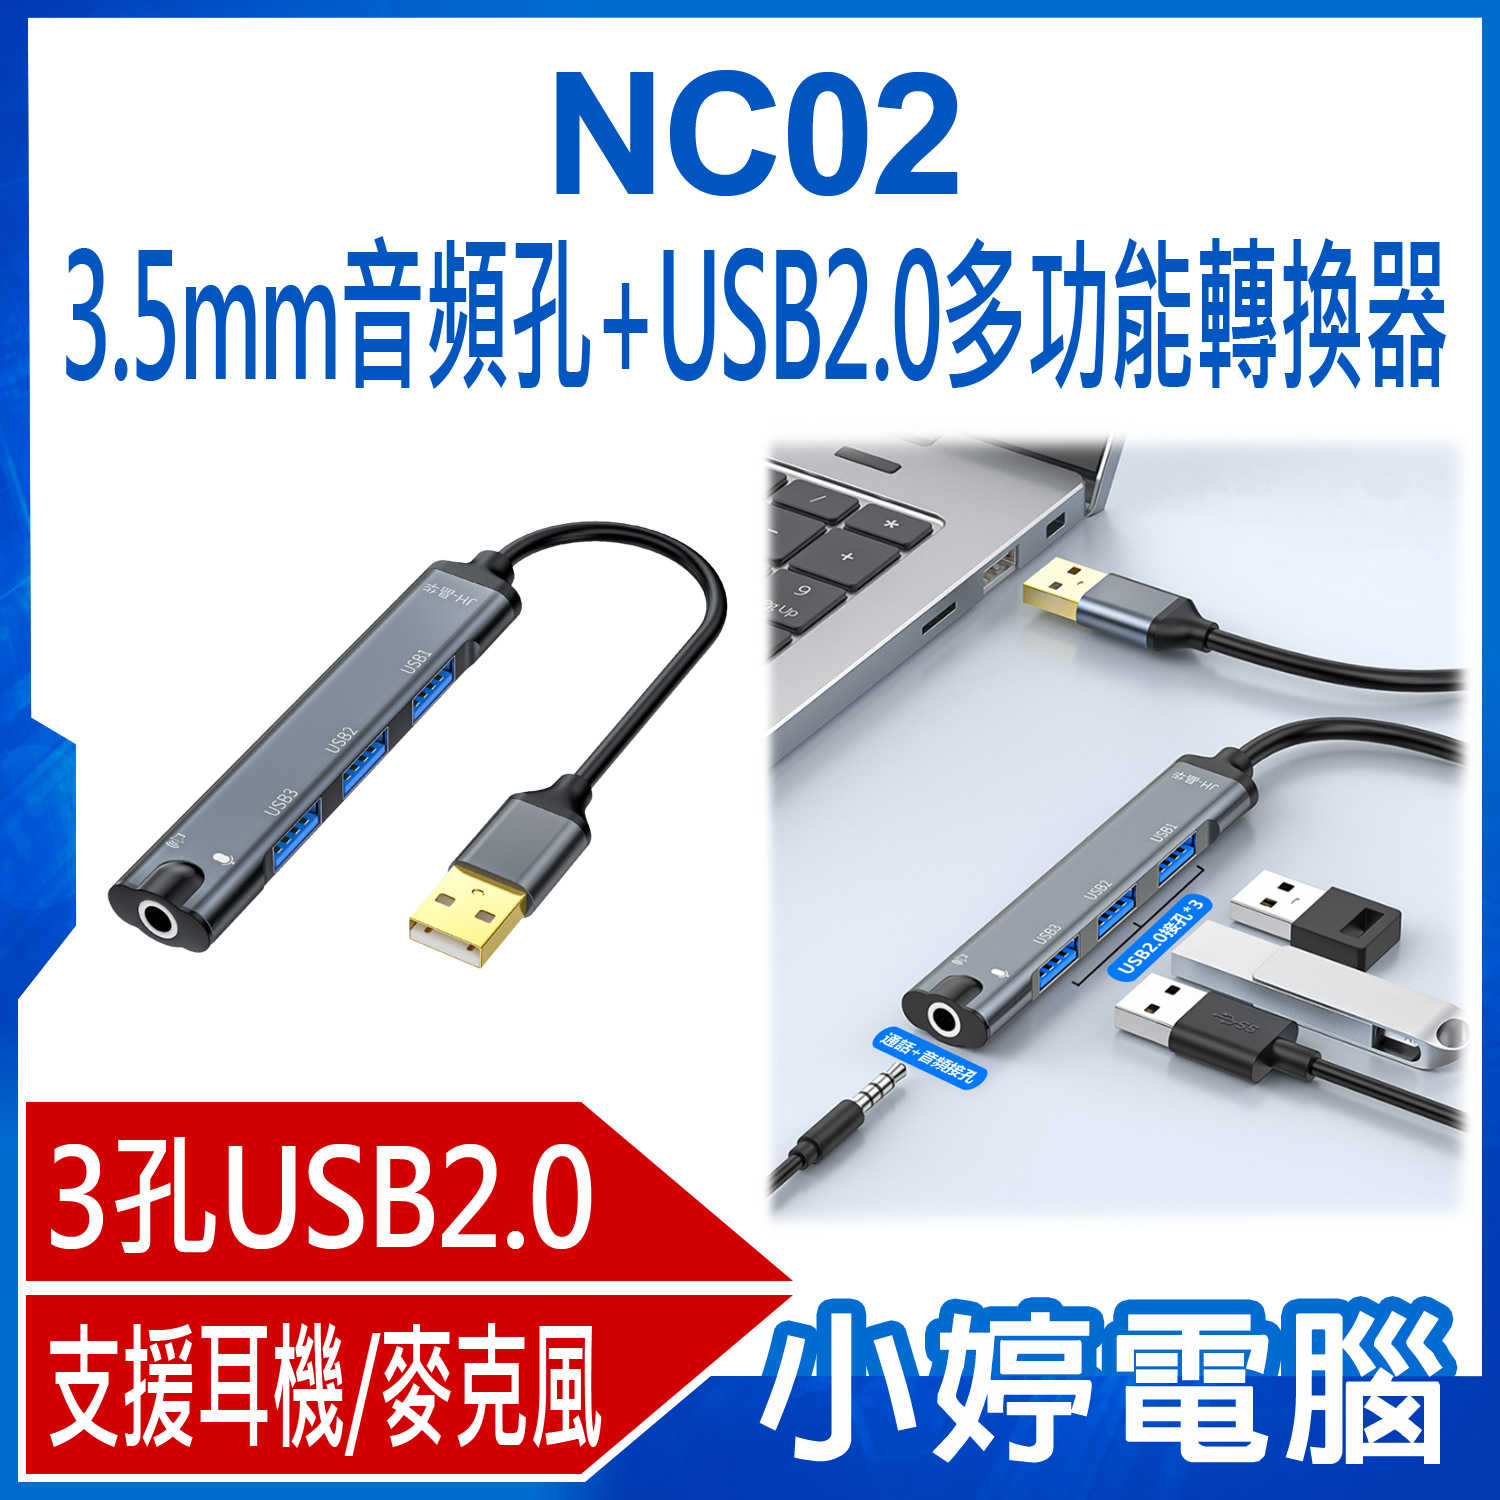 【小婷電腦】全新 NC02 3.5mm音頻孔+USB2.0多功能轉換器 音效卡 3孔USB2.0 HUB 集線器